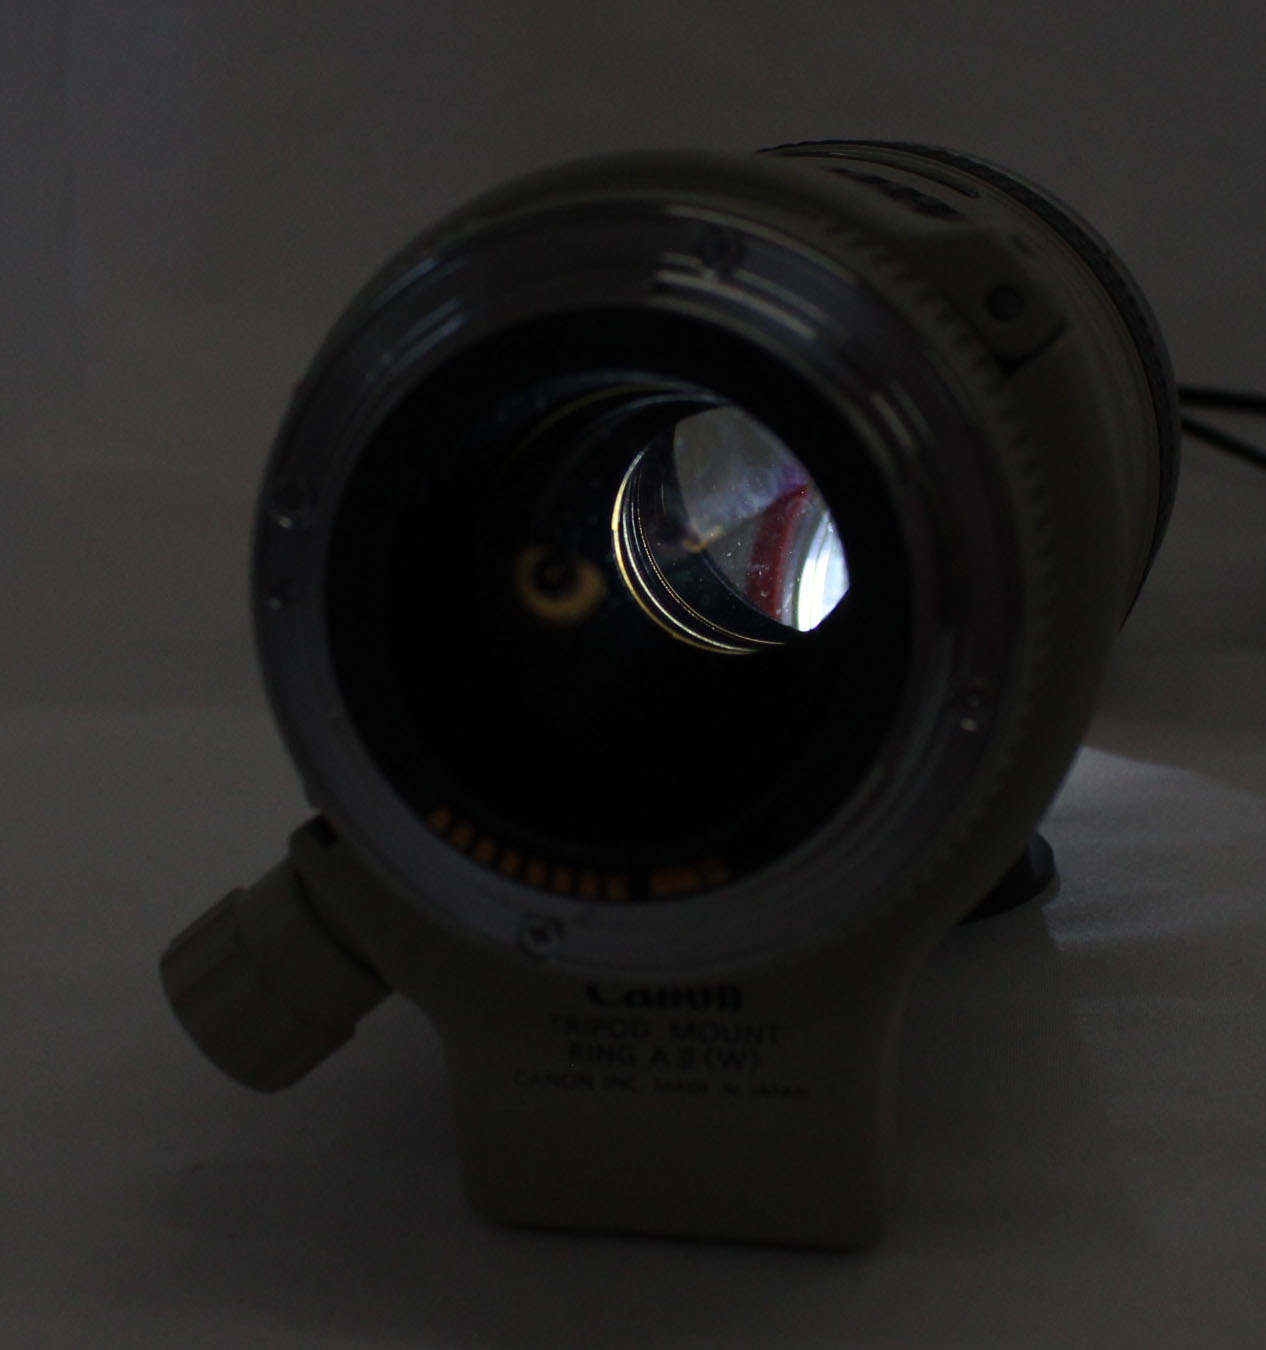  Canon EF 70-200mm F/4 L USM AF Zoom Lens with Hood ET-74 from Japan Photo 9